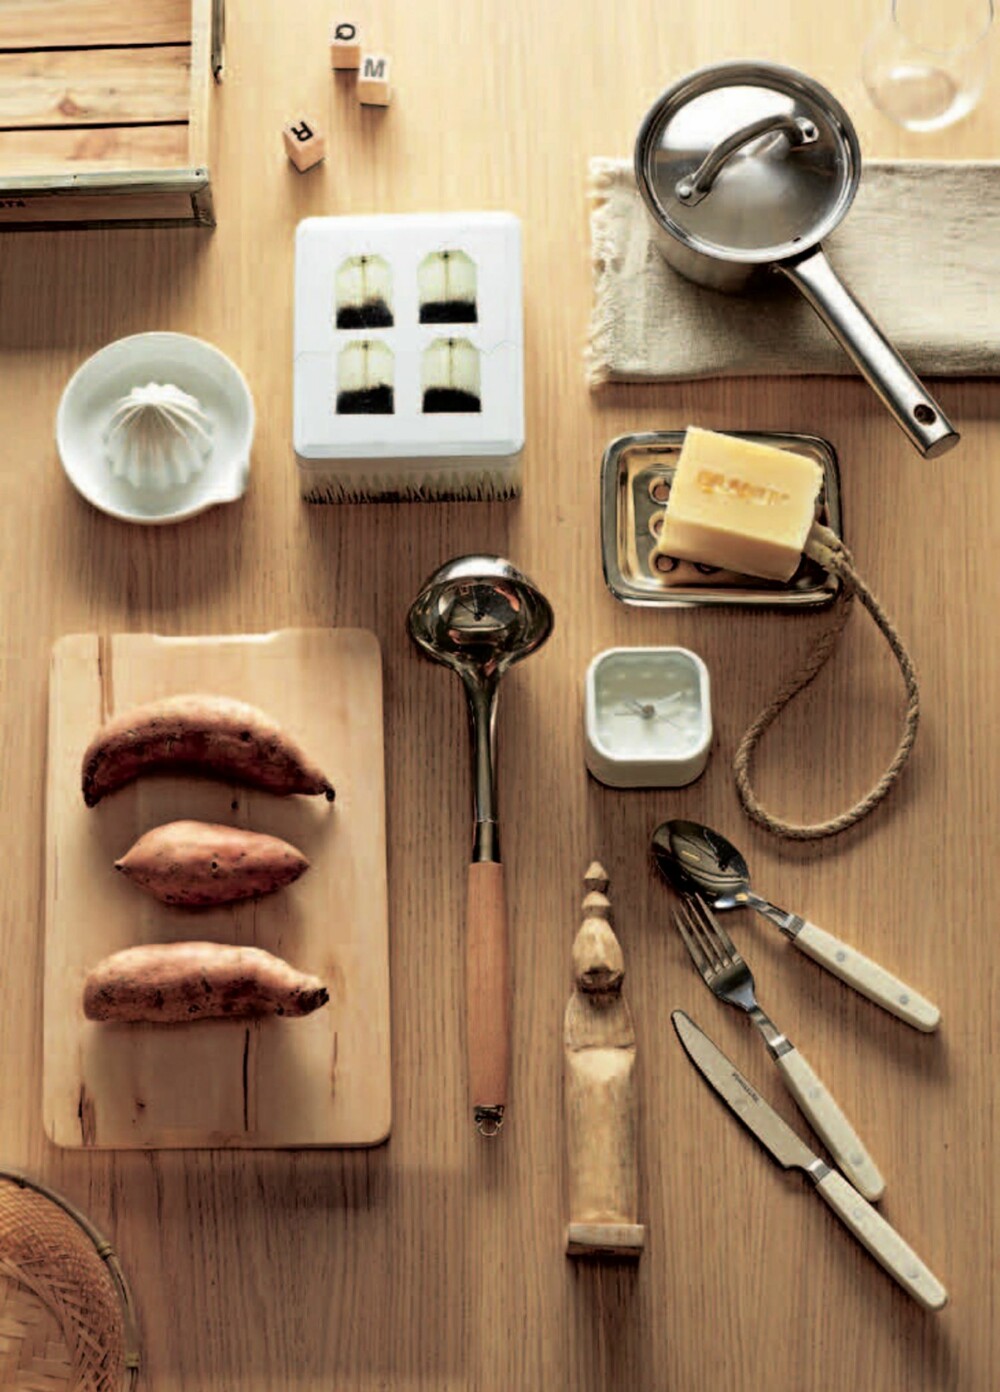 TABLÅ: Kjøkken og borddekking er temaet. Treverk, metall, robuste produkter.